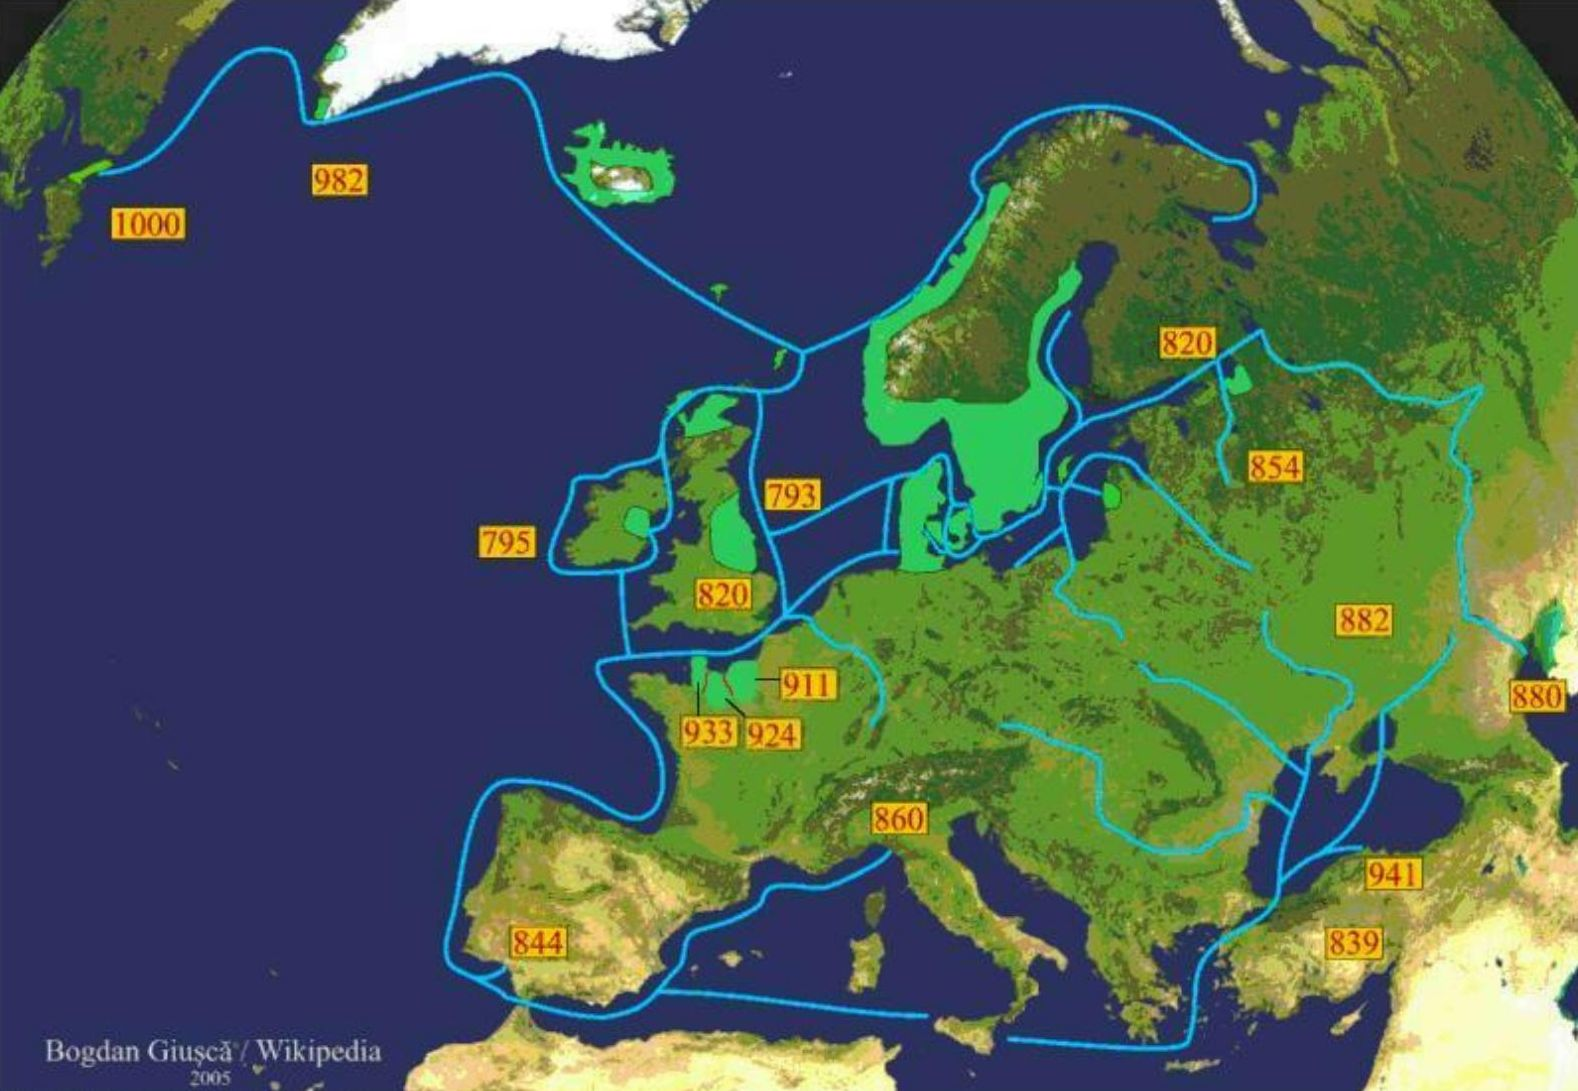 ヴァイキングの航海 緑色はヴァイキングの居住地（植民地）、青線は経路、数字は到達年。黒海やカスピ海、北アメリカ大陸のニューファンドランド島にも到達している